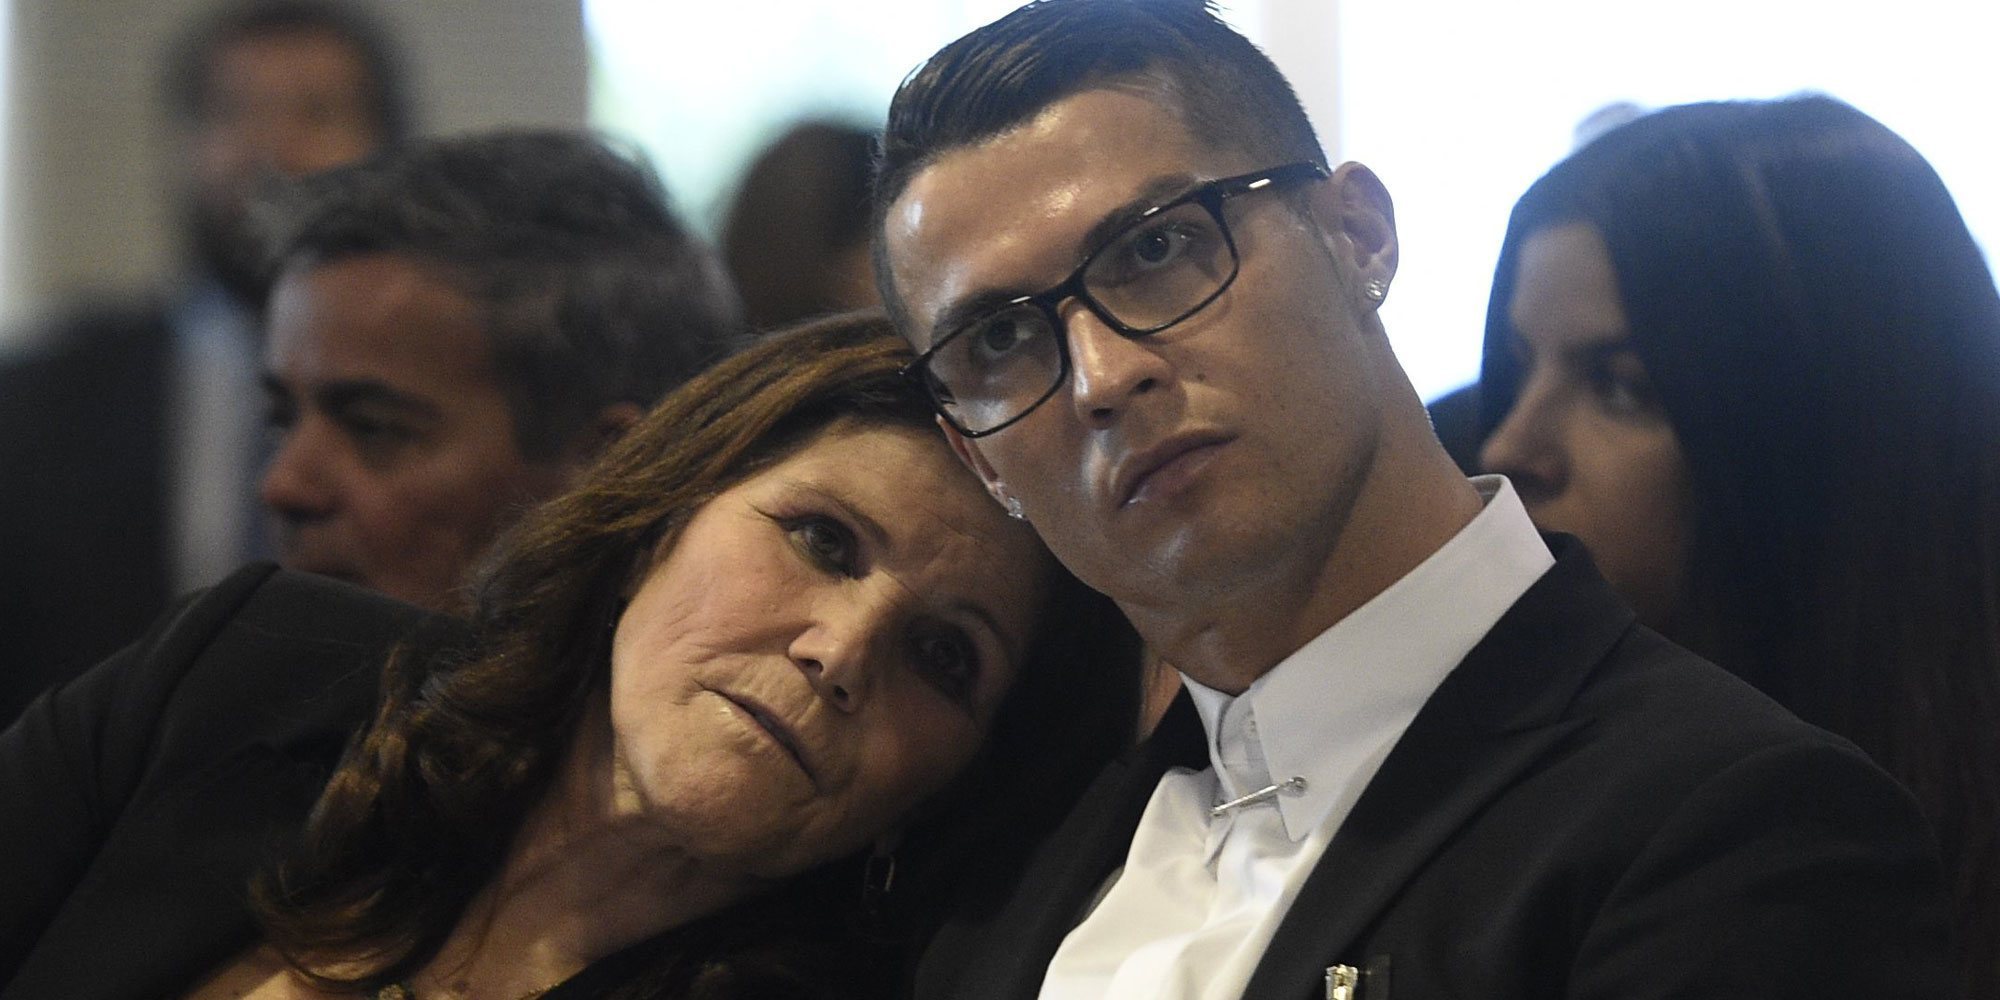 Cristiano Ronaldo, feliz después de que hayan dado el alta a su madre: "Muy agradecido de tenerla en casa"